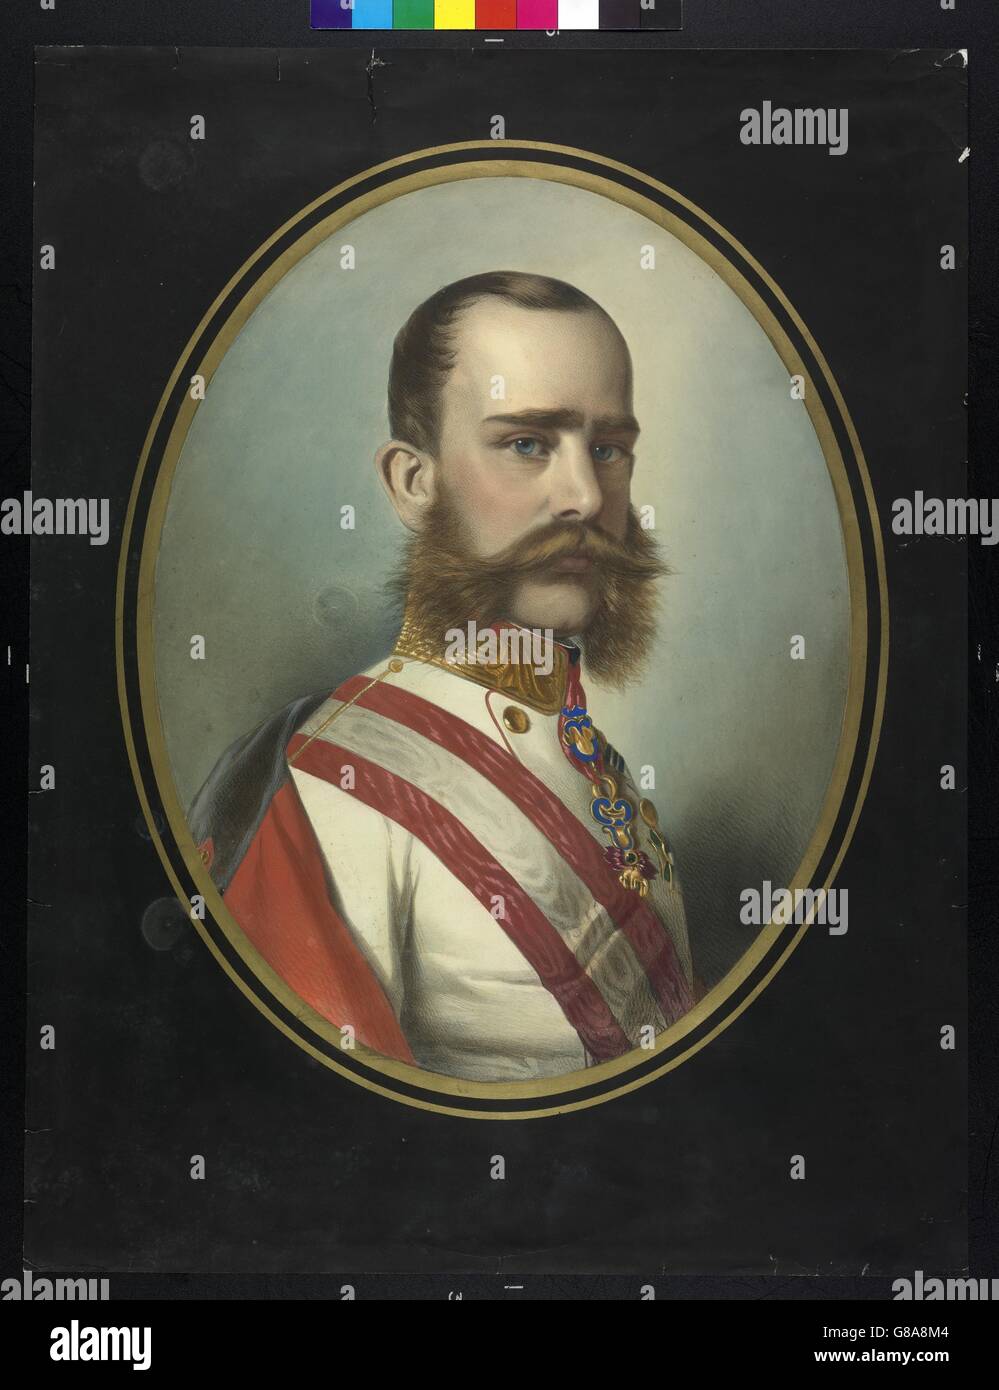 Franz Joseph I., Kaiser von Österreich Stock Photo